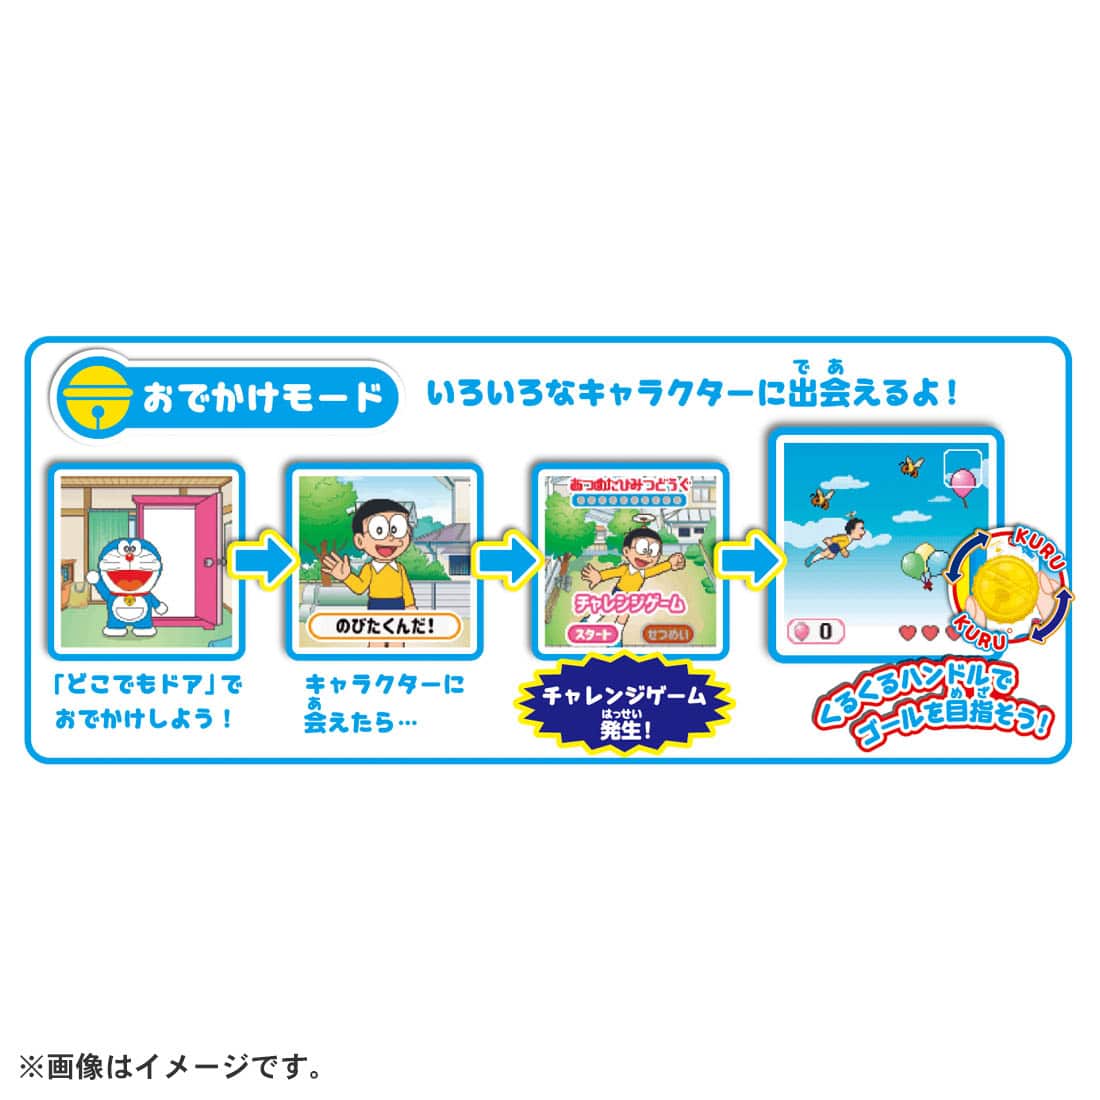 NEW] POCHI-CACHA - Doraemon Takara Tomy Japan [ OCT 29 2022